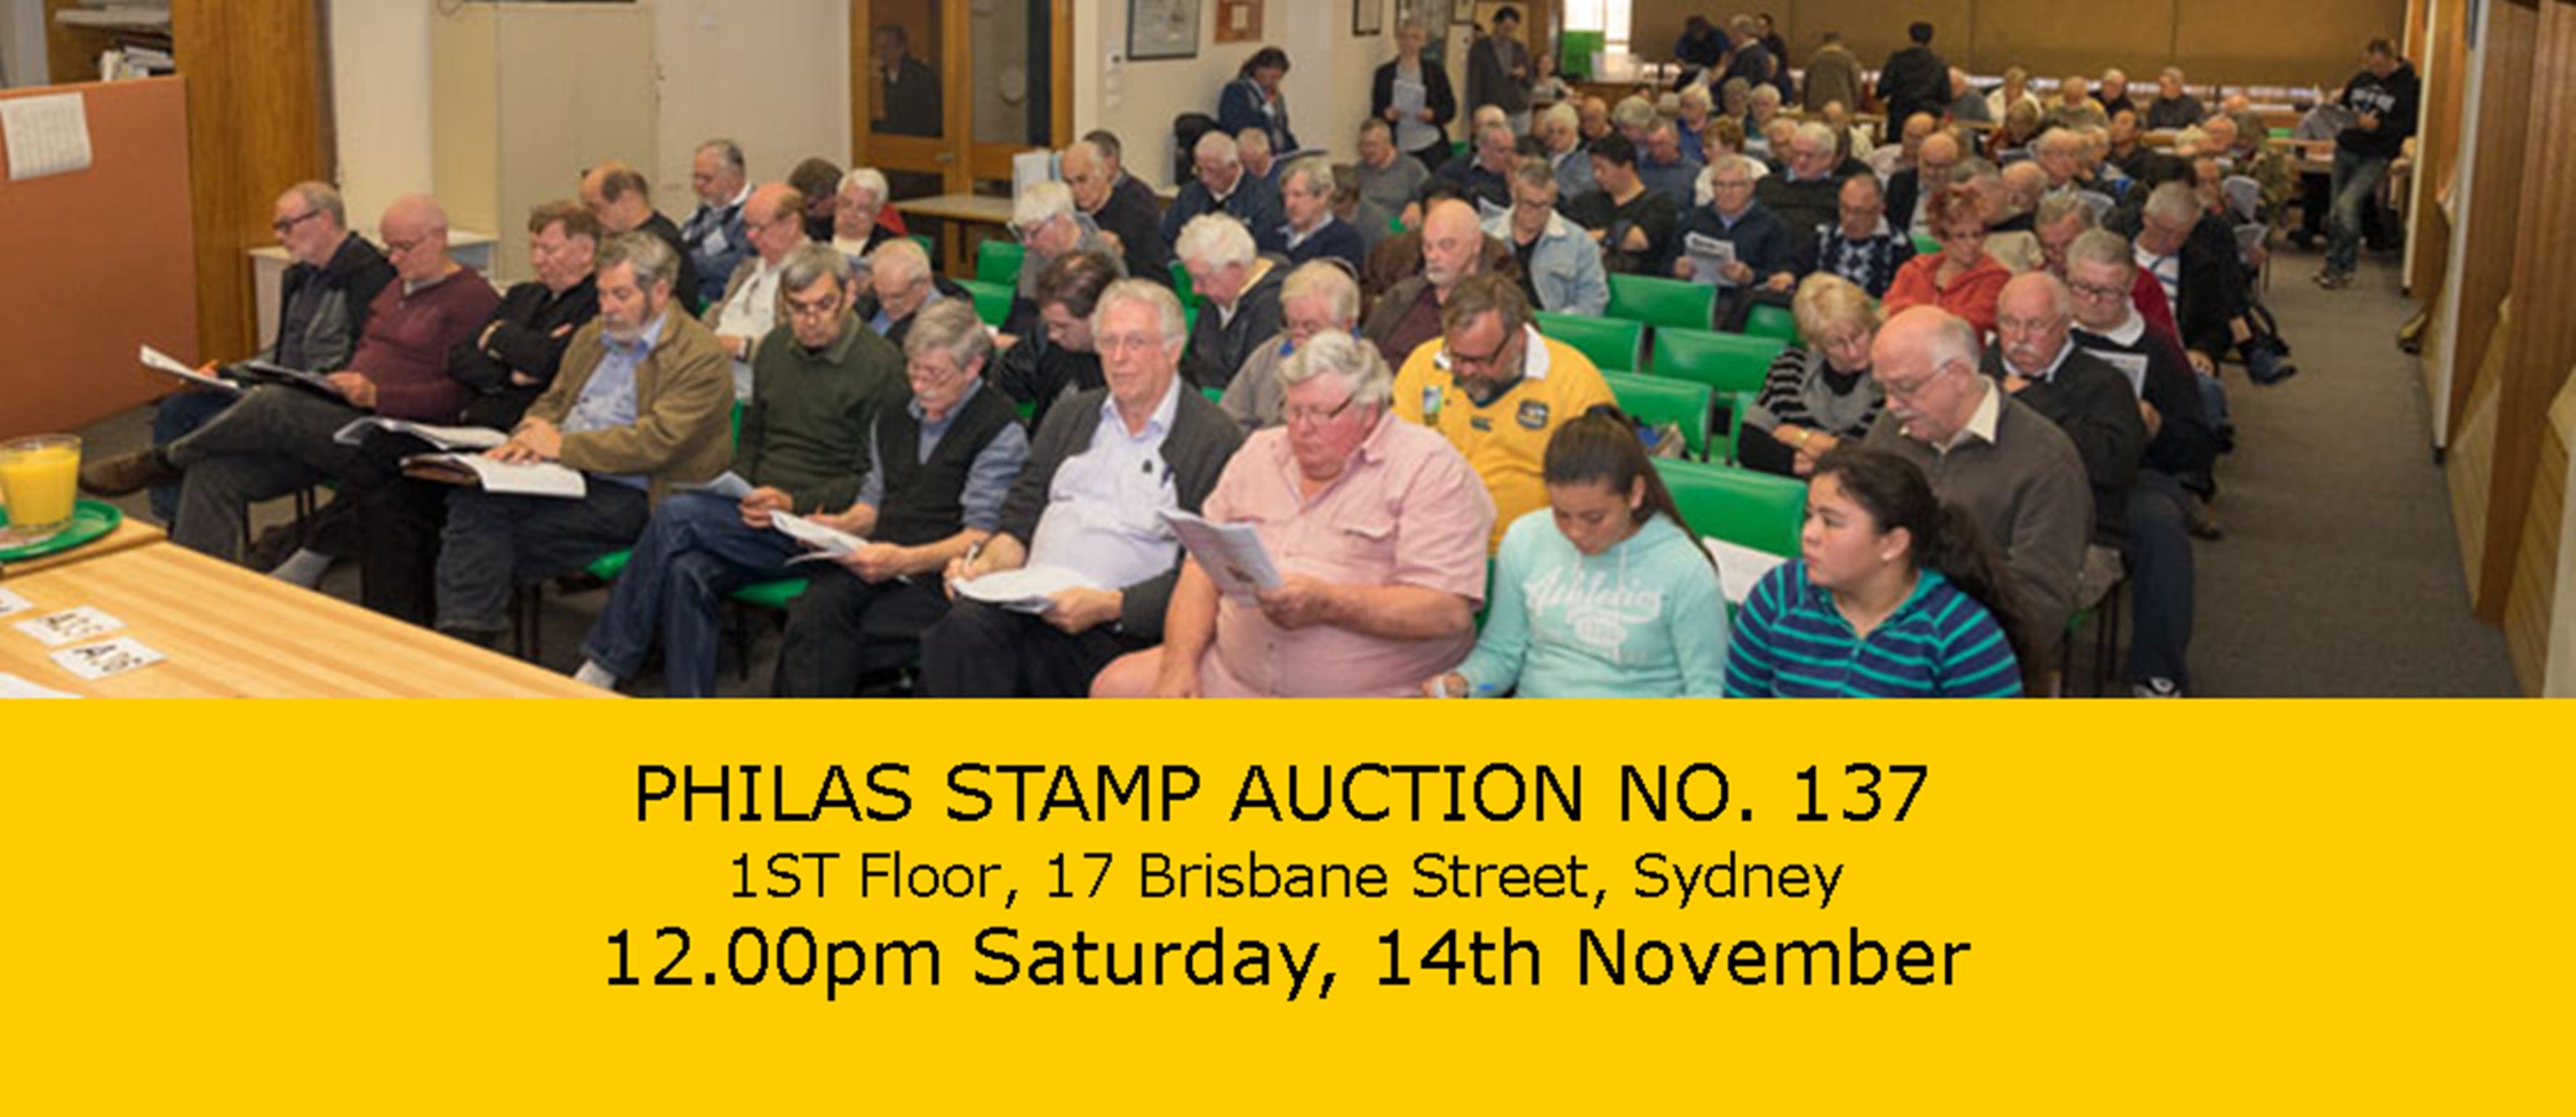 PHILAS Stamp Auction No. 137 - Pubs Sydney